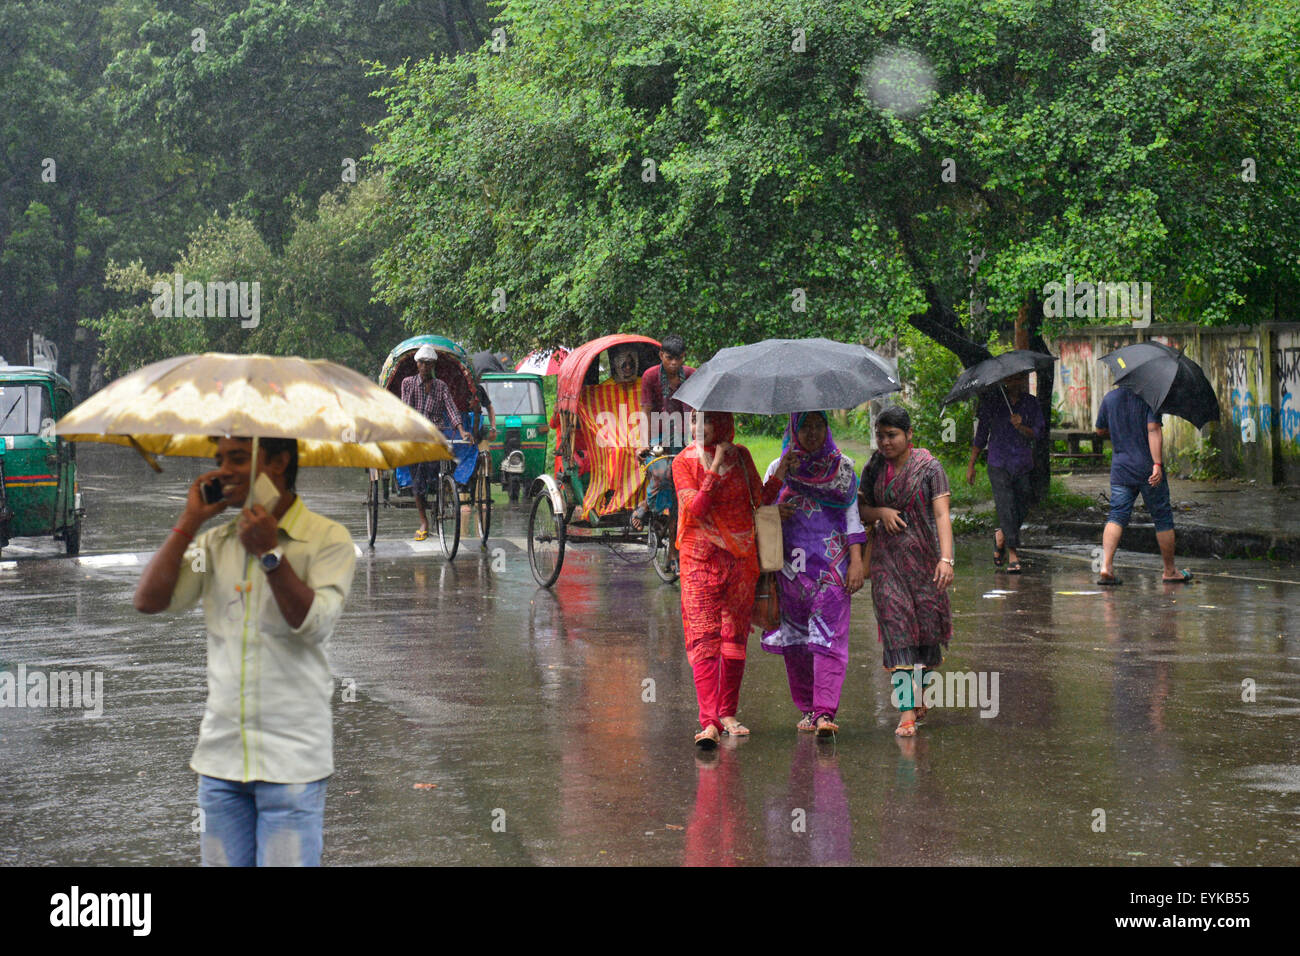 Dhaka, Bangladesh. El 31 de julio de 2015. Pueblos de Bangladesh despertando en la calle con sombrilla a través de tromba de agua causada por el debilitamiento de la tormenta tropical "Komen" en Dhaka, Bangladesh. El 31 de julio de 2015 Continua la lluvia moderada con gusty viento es probable que continúe hasta mañana causada por el debilitamiento de la tormenta tropical "Komen" en Dhaka y en otras partes del país, de acuerdo a Dhaka met office previsión. Crédito: Mamunur Rashid/Alamy Live News Foto de stock